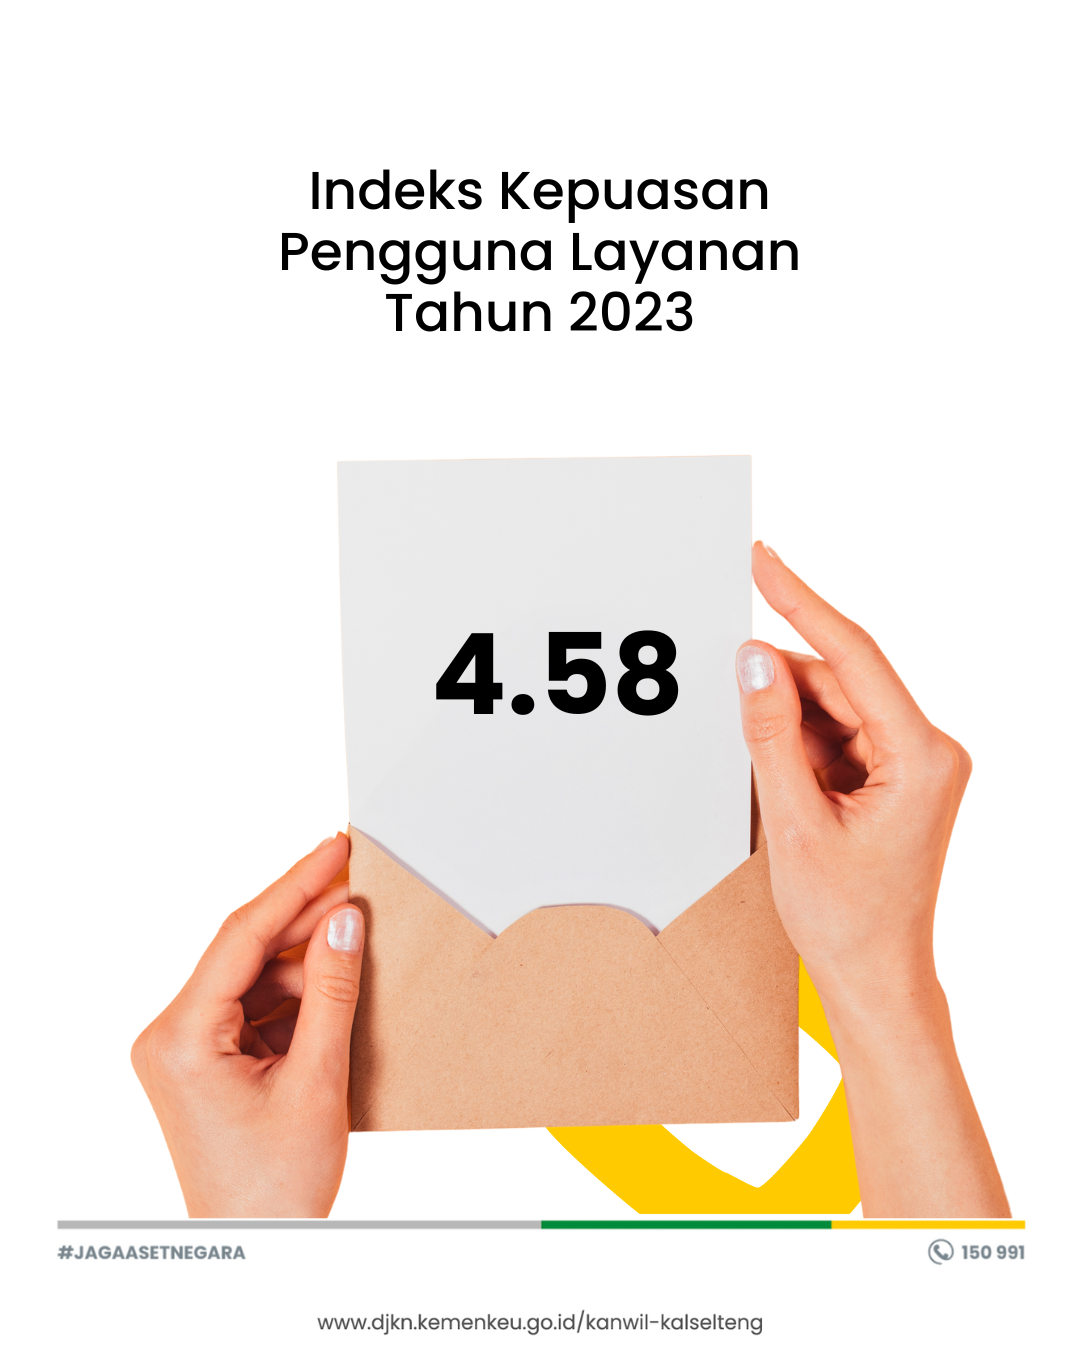 Indeks Kepuasan Pengguna Layanan Kanwil DJKN Kalimantan Selatan dan Tengah Tahun 2023